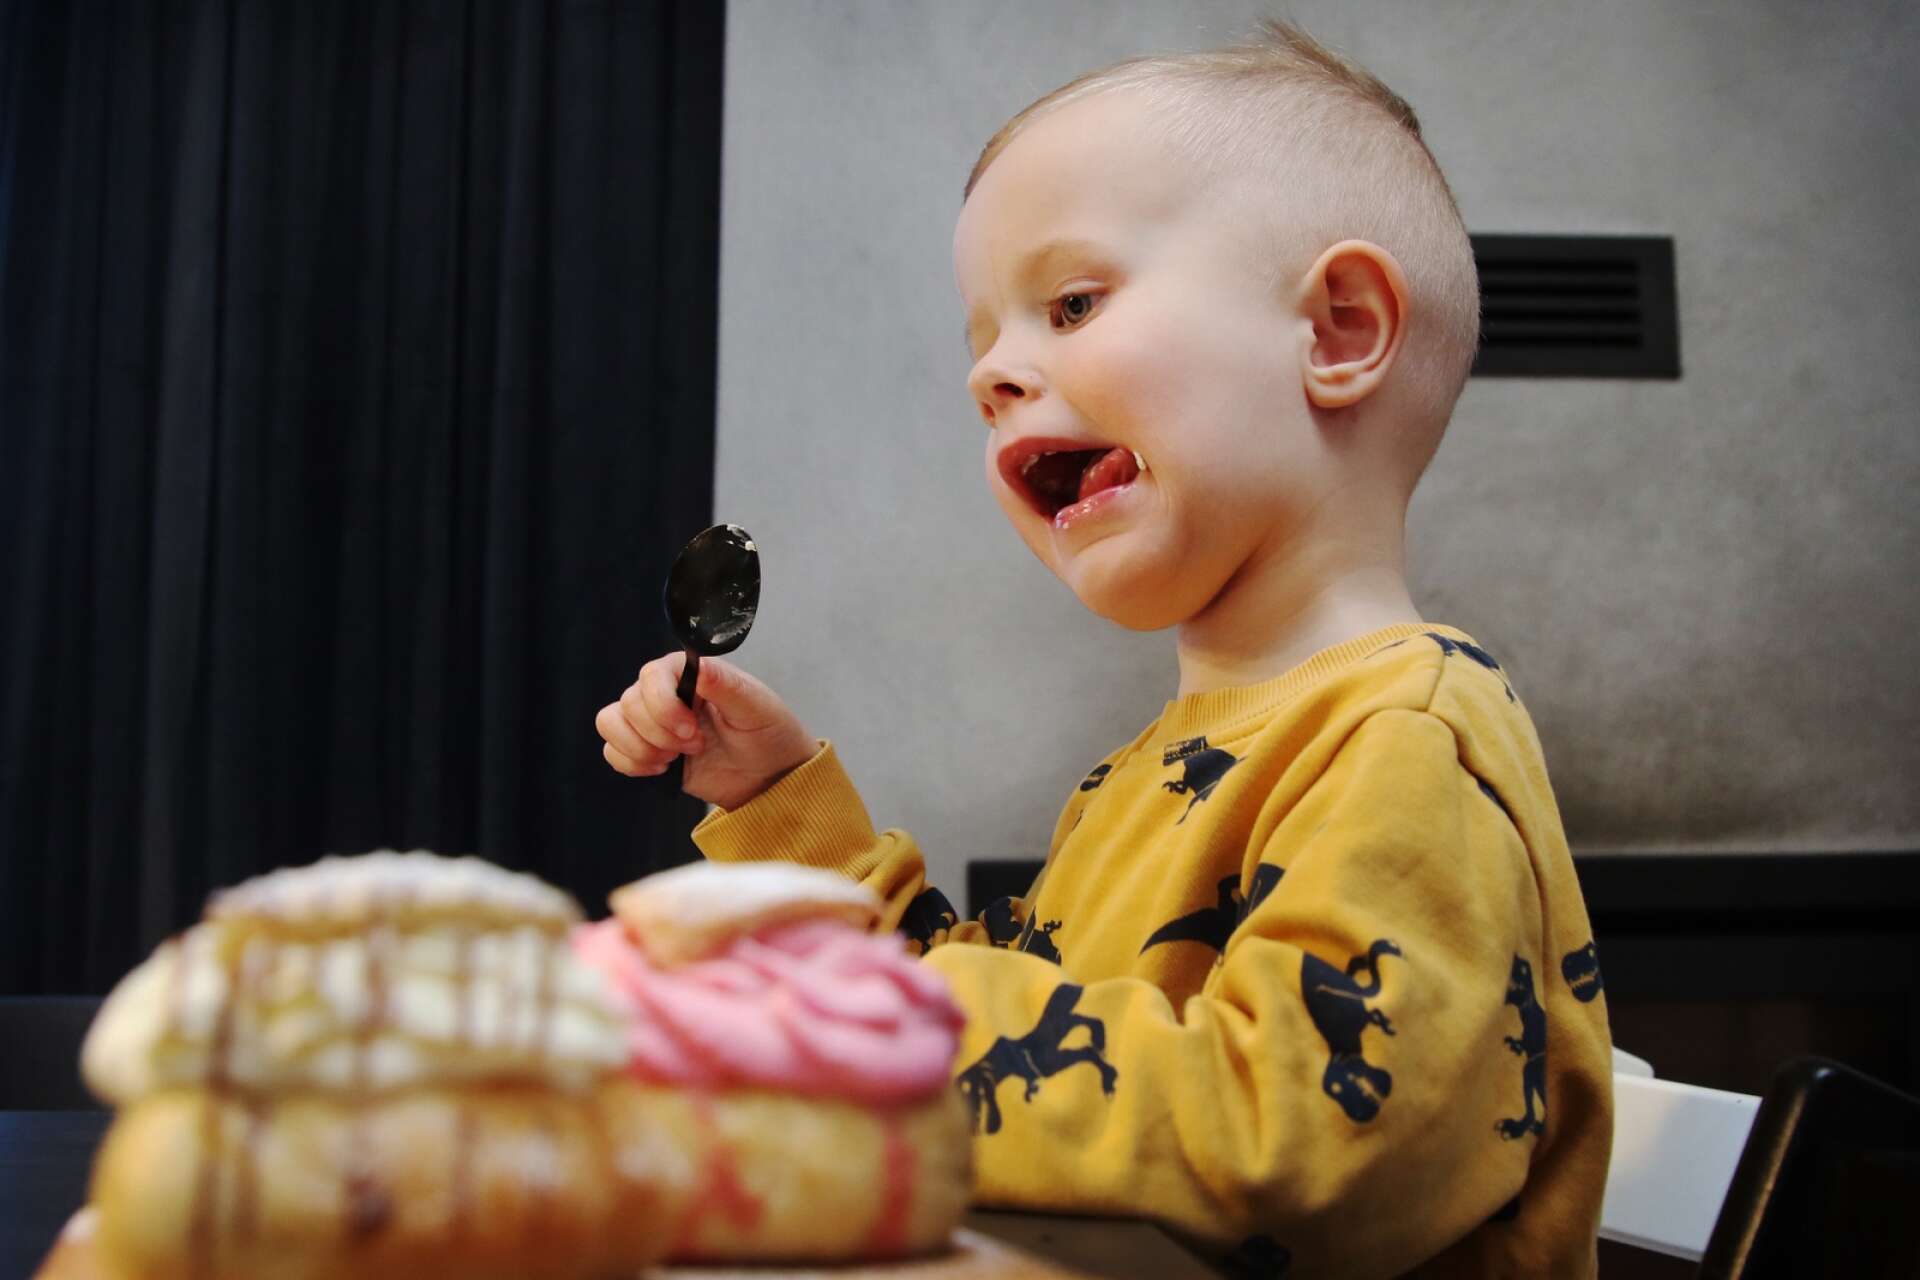 Vilton, 3, gillar vaniljfyllningen bäst. Mamma Mikaela Wedin håller med, men även mandelmassa har varit efterfrågat bland hennes fettisdagskunder.